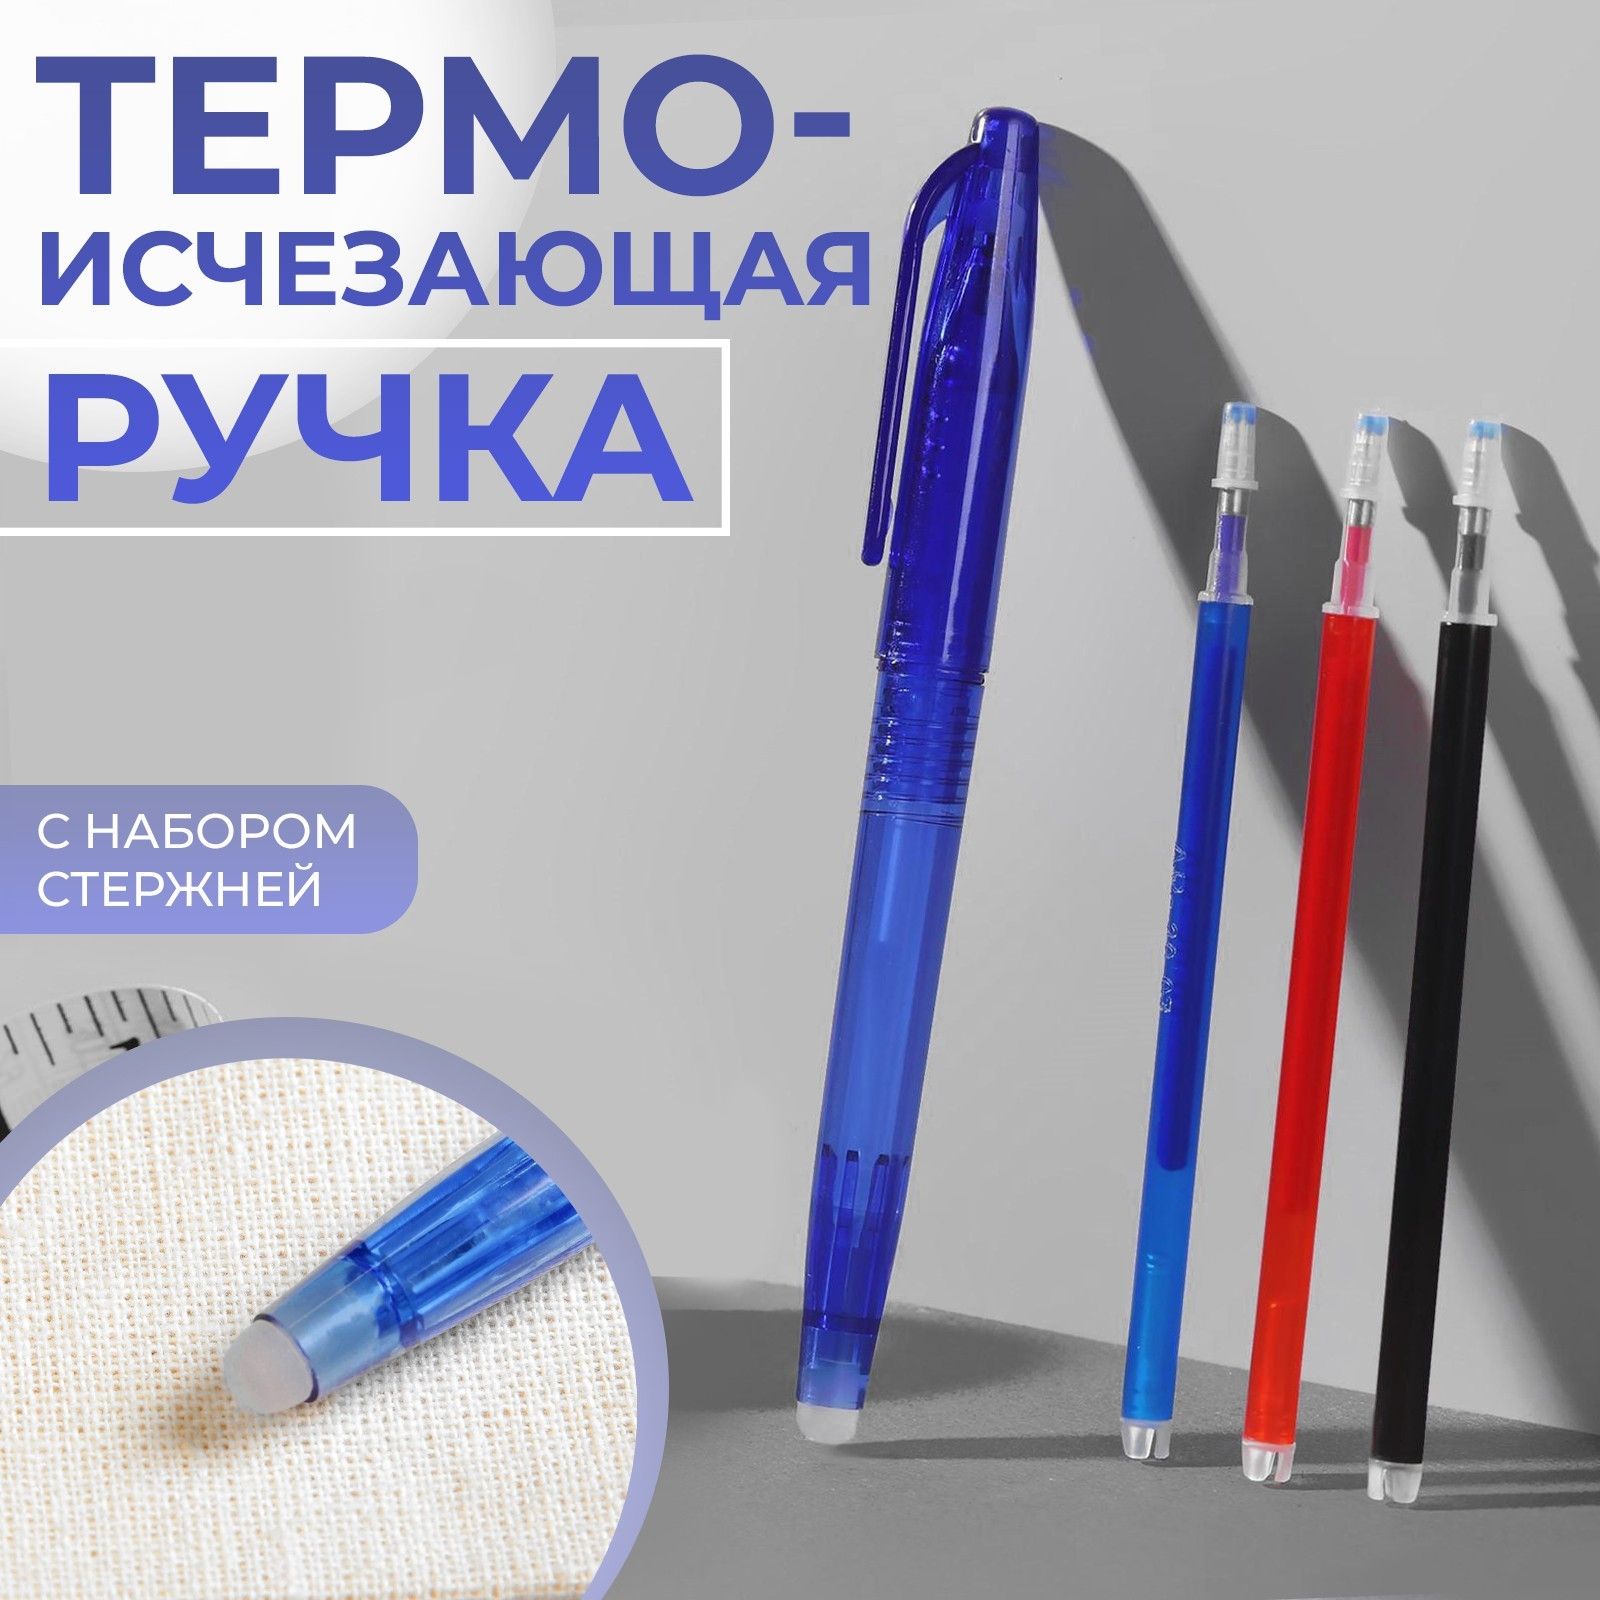 Ручка для ткани термоисчез с набором стержней 4шт белый/розовый/чёрн/синий